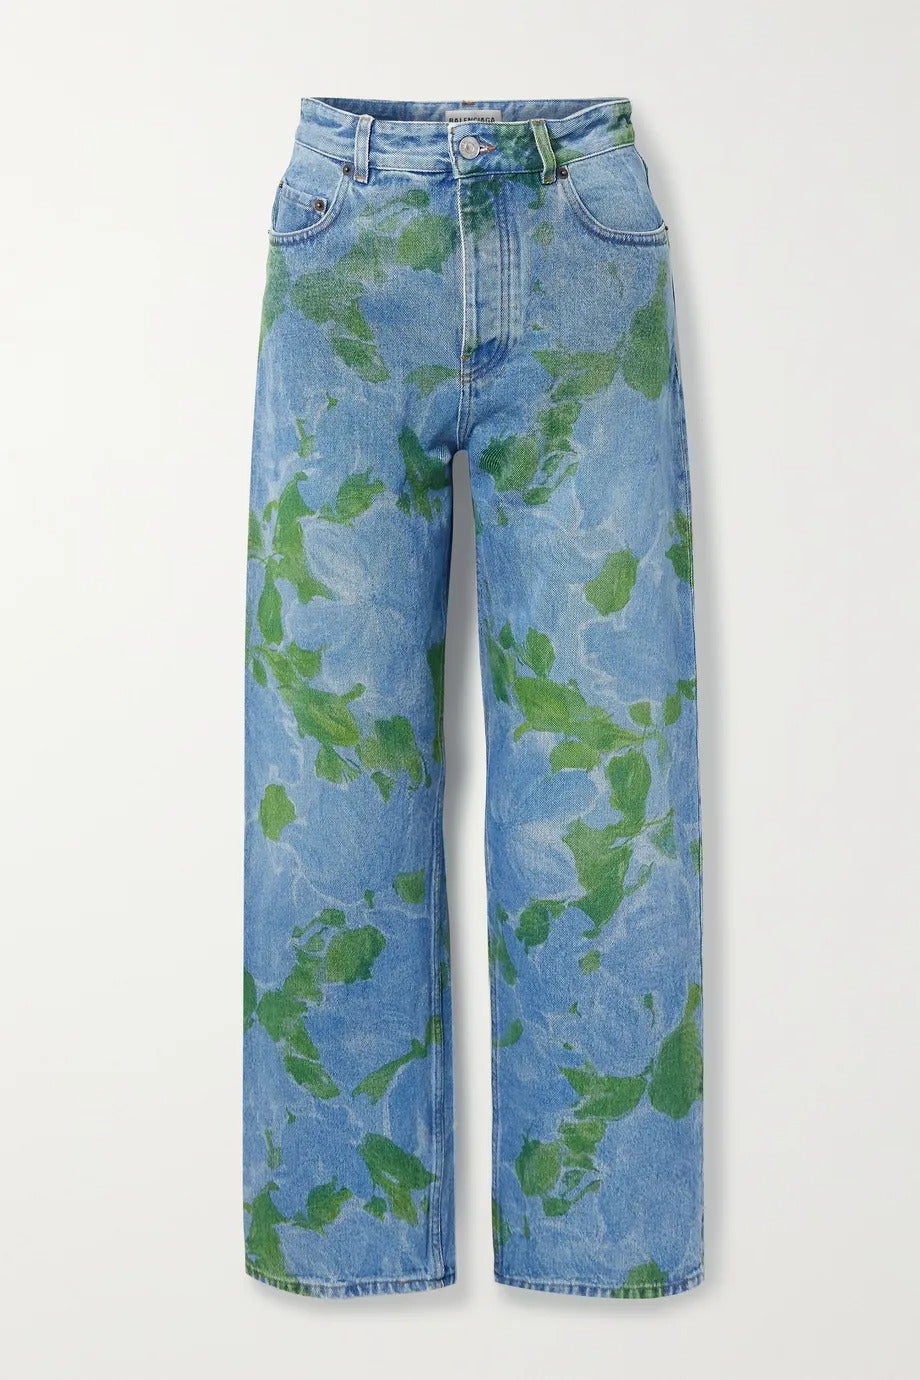 Balenciaga + Floral Print High Rise Jeans